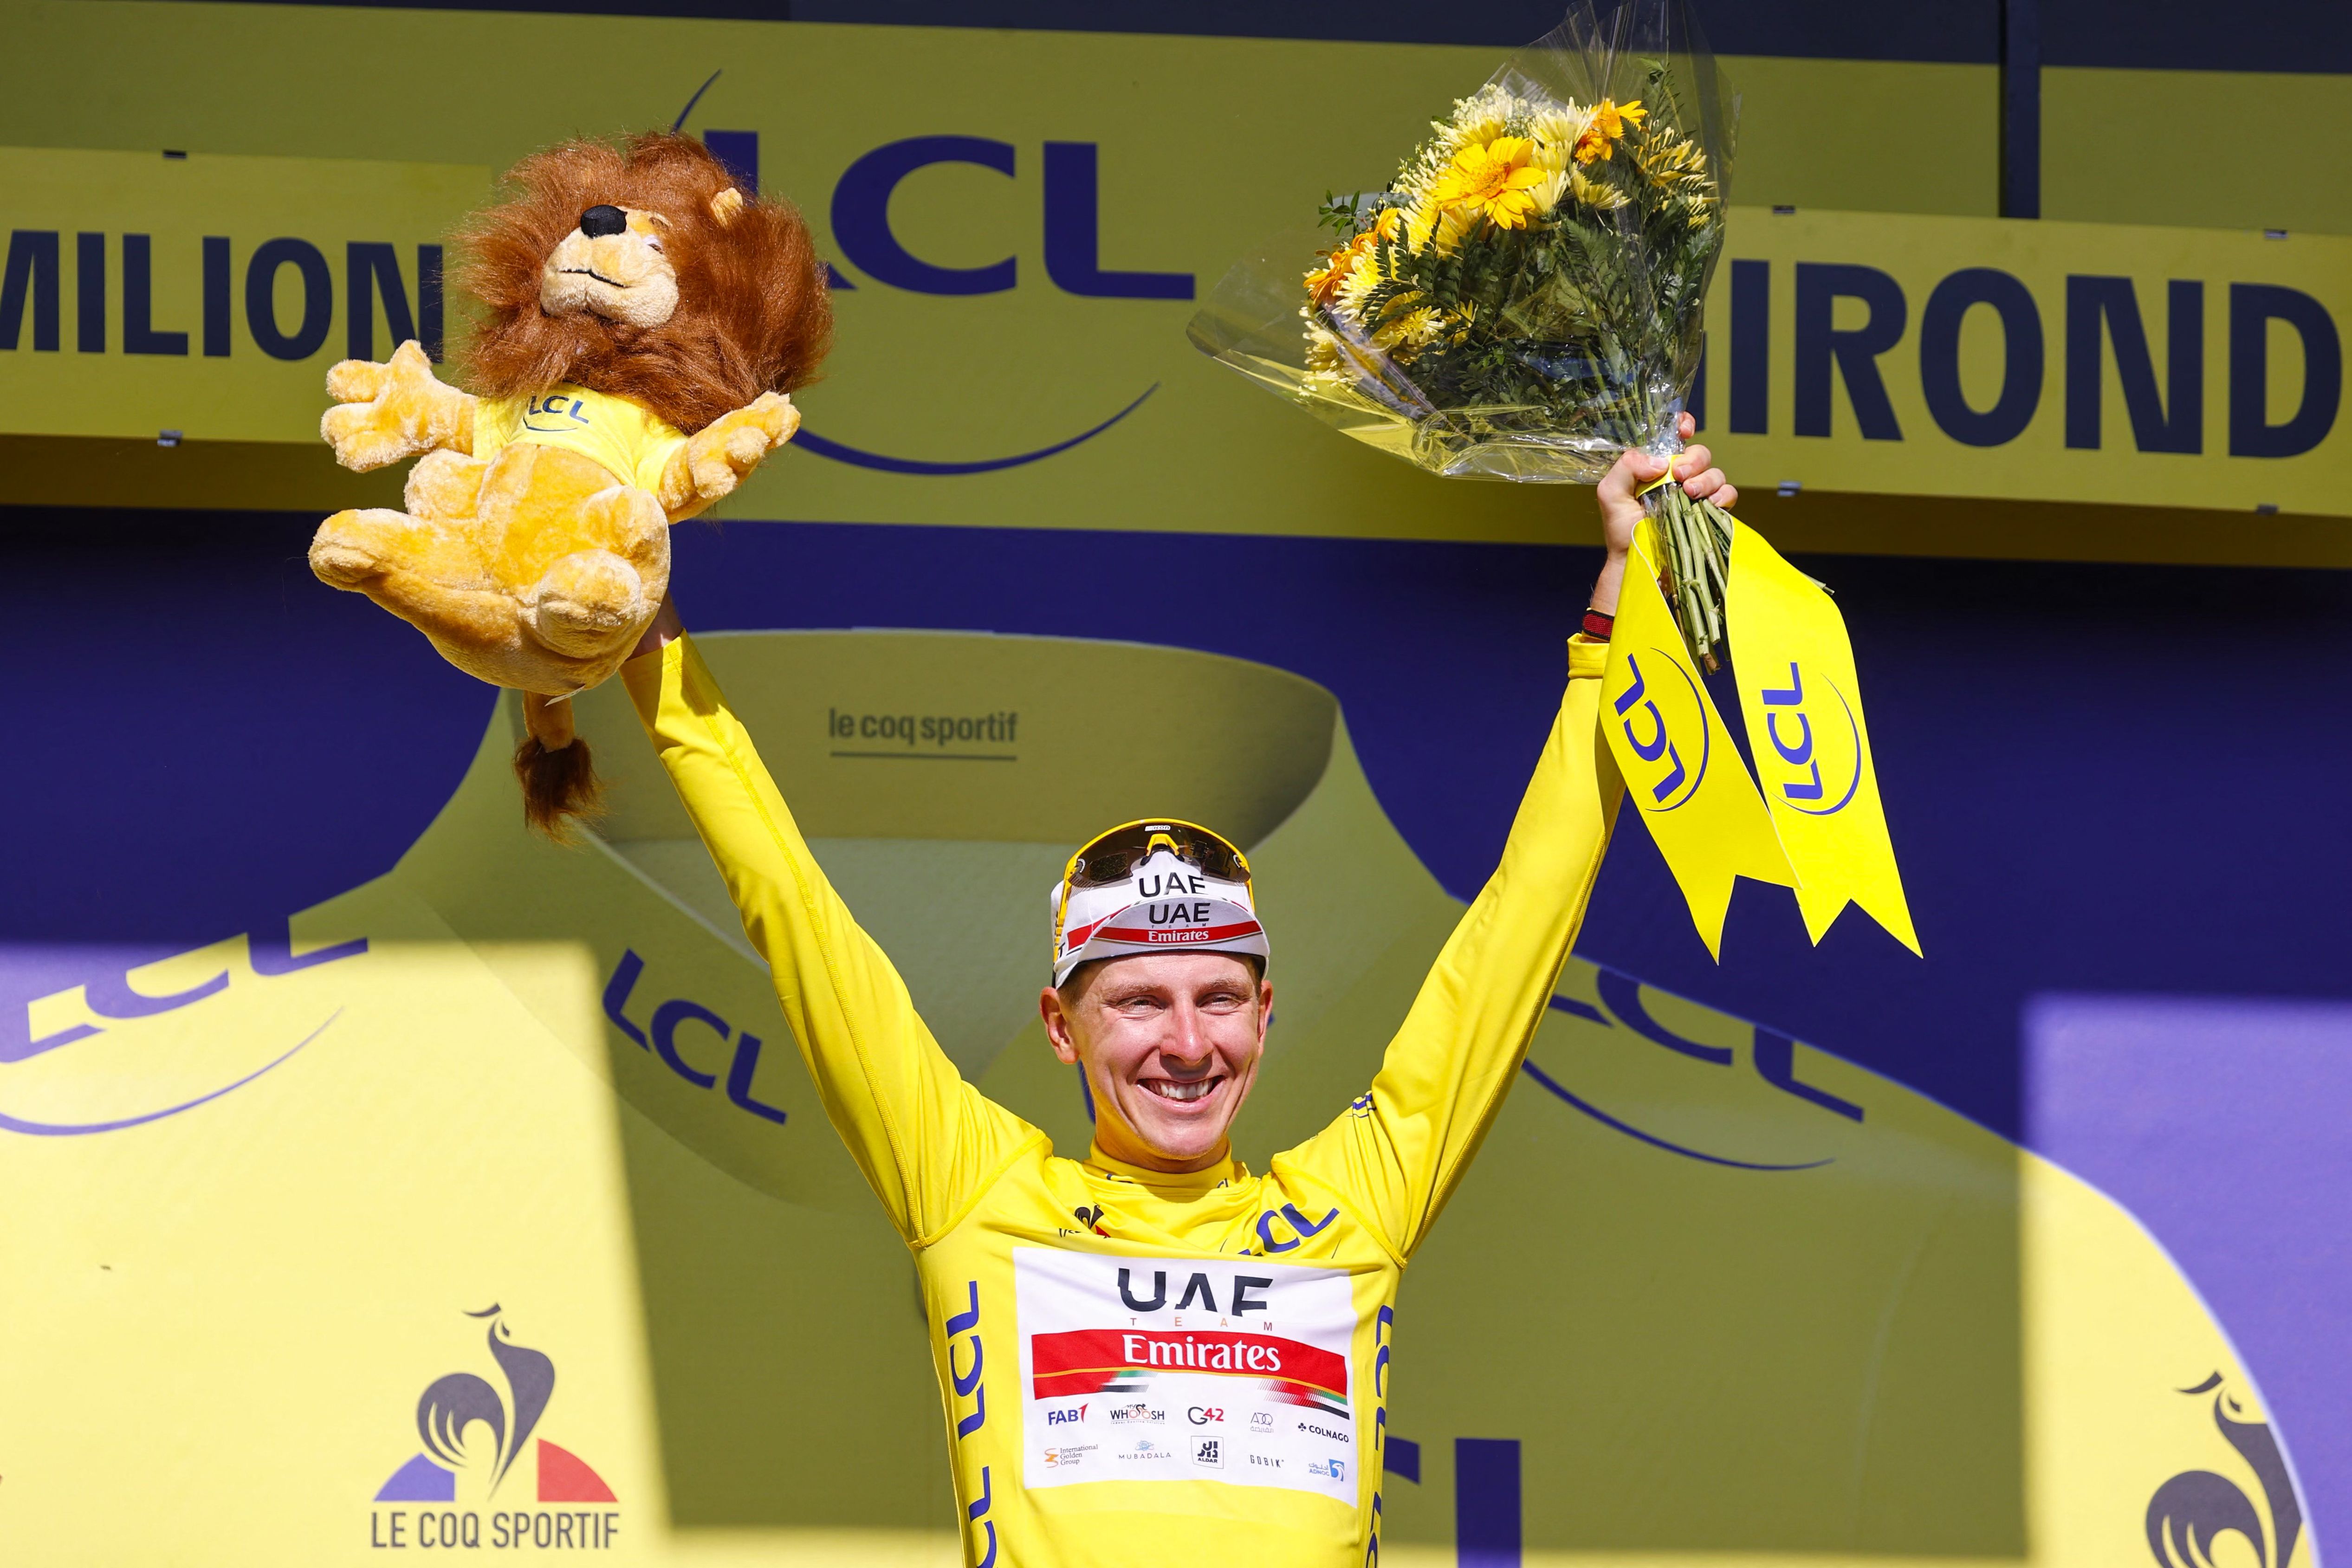 El esloveno Tadej Pogacar celebra en el podio al final de la etapa 20 en el Tour de Francia. (Foto Prensa Libre: AFP)